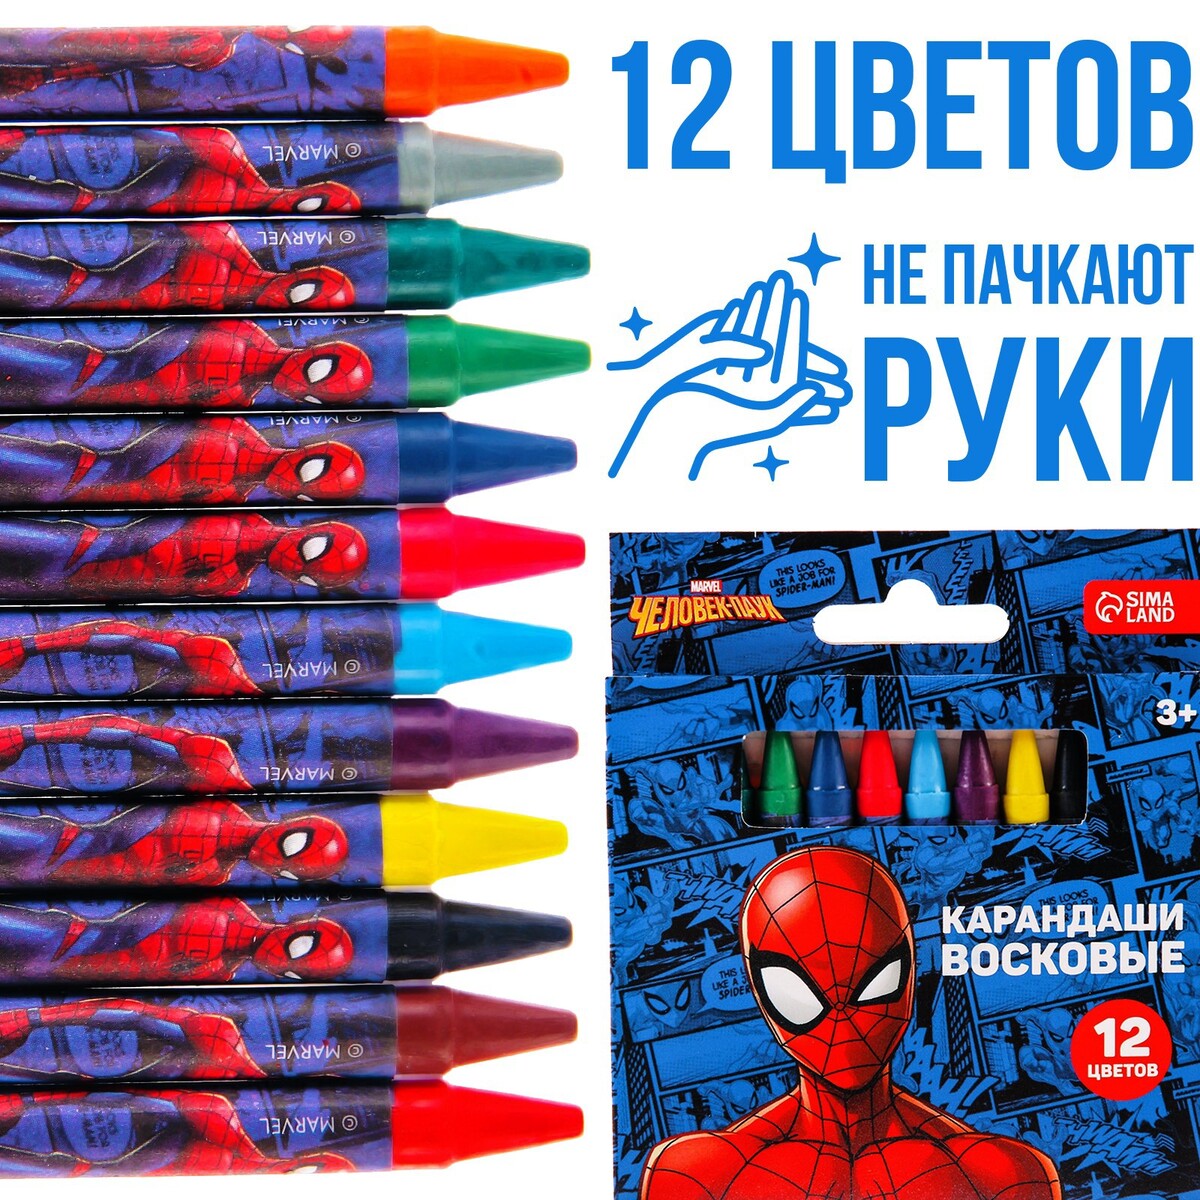 Восковые карандаши, набор 12 цветов, человек-паук человек сознание коммуникация интернет